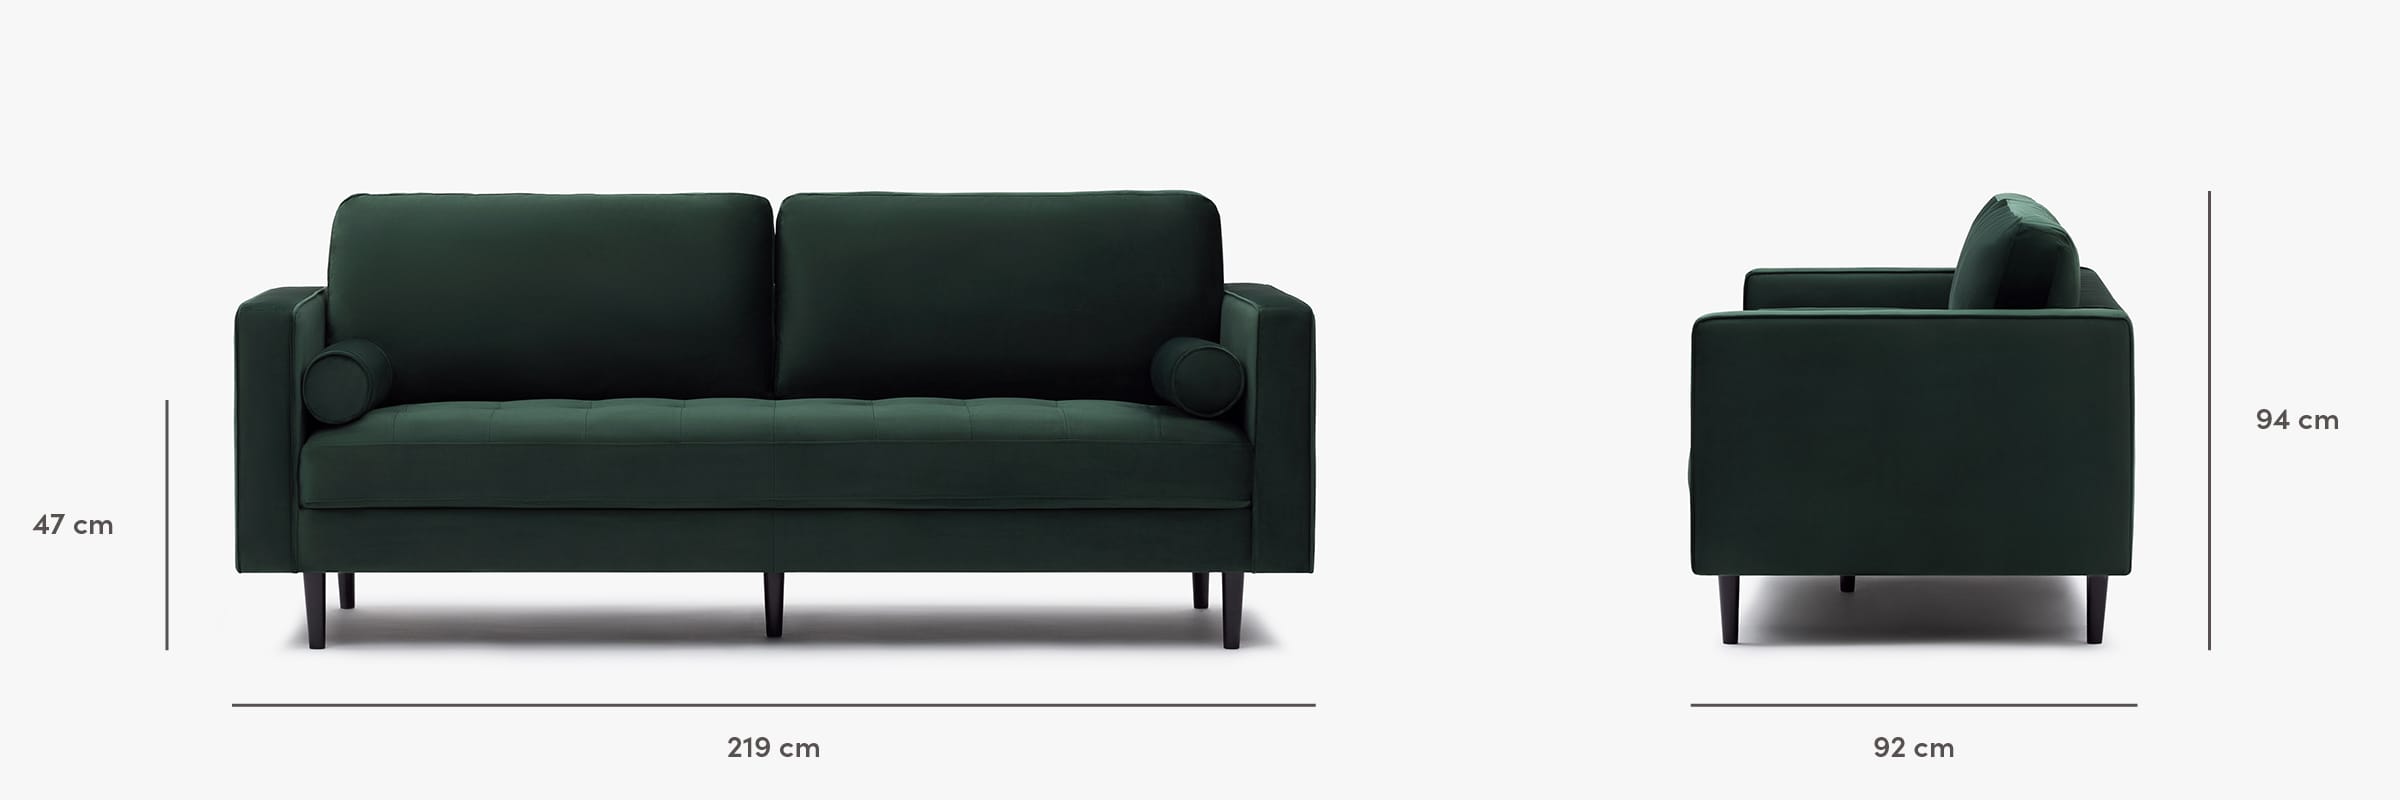 Soho sofa velvet dimensions